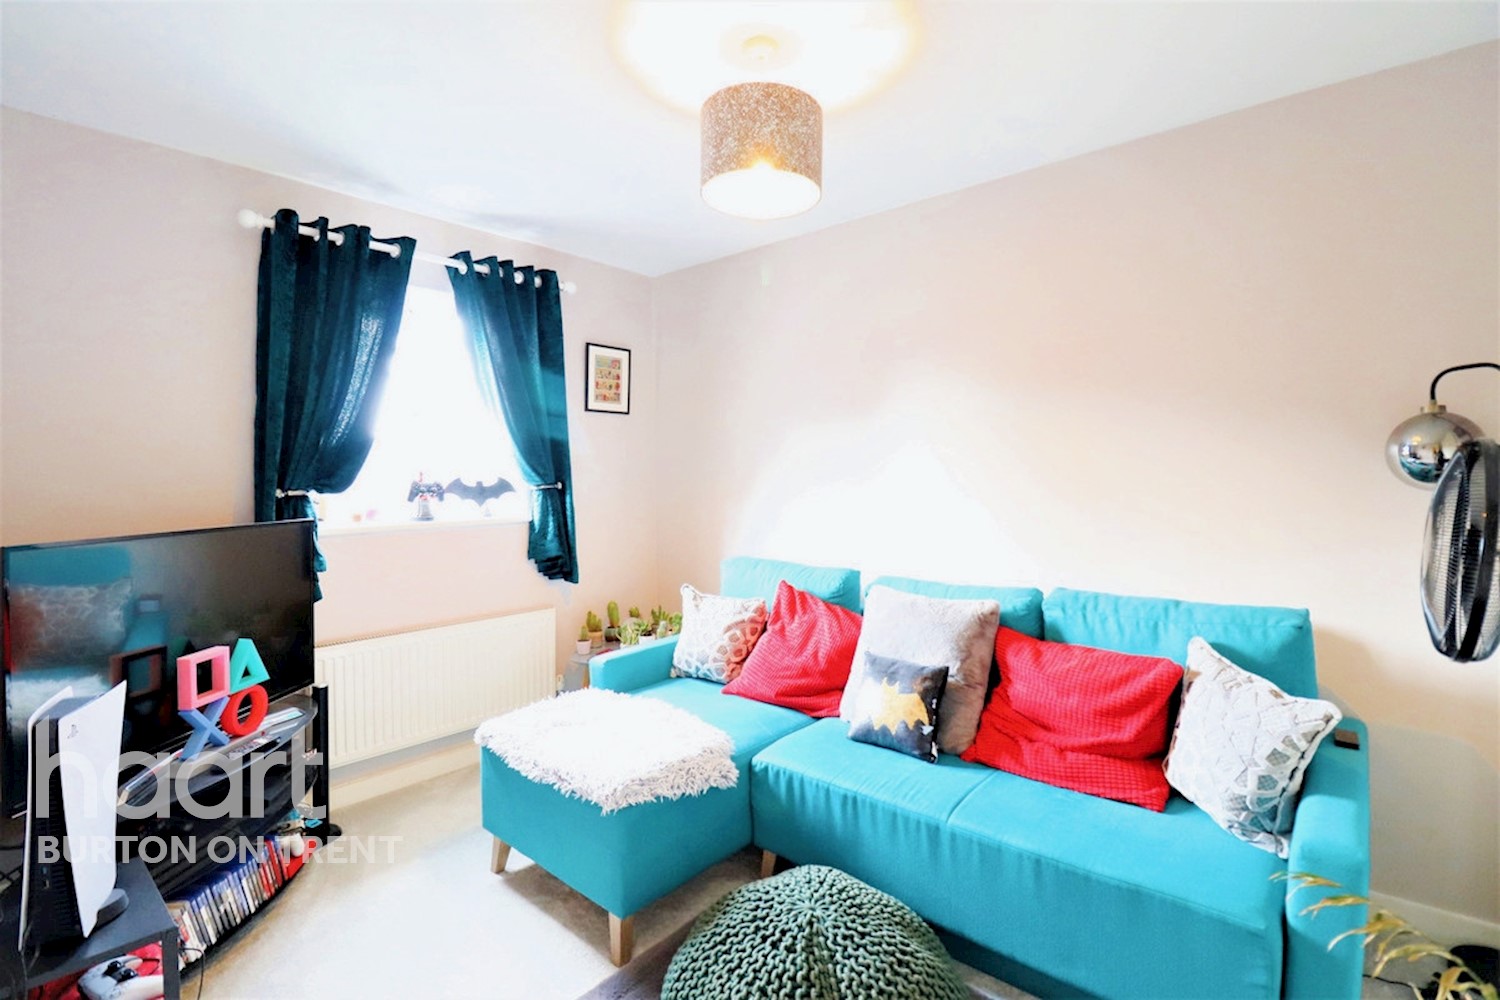 4 bedroom Semi-Detached House St Matthews Street, Burton-On-Trent £235,000 haart